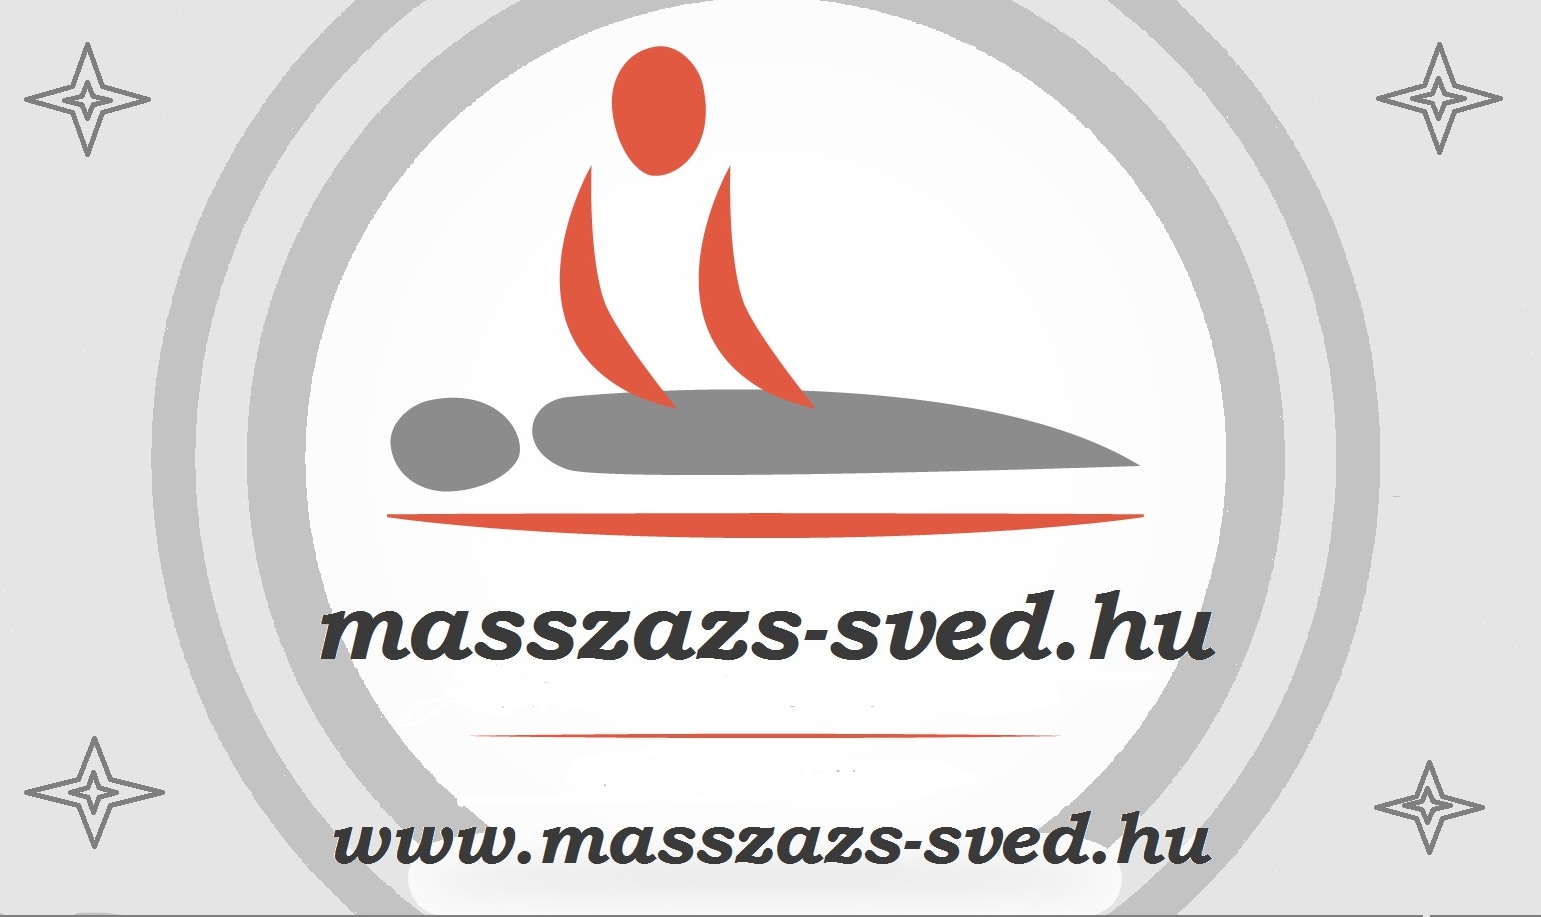 www.masszazs-sved.hu